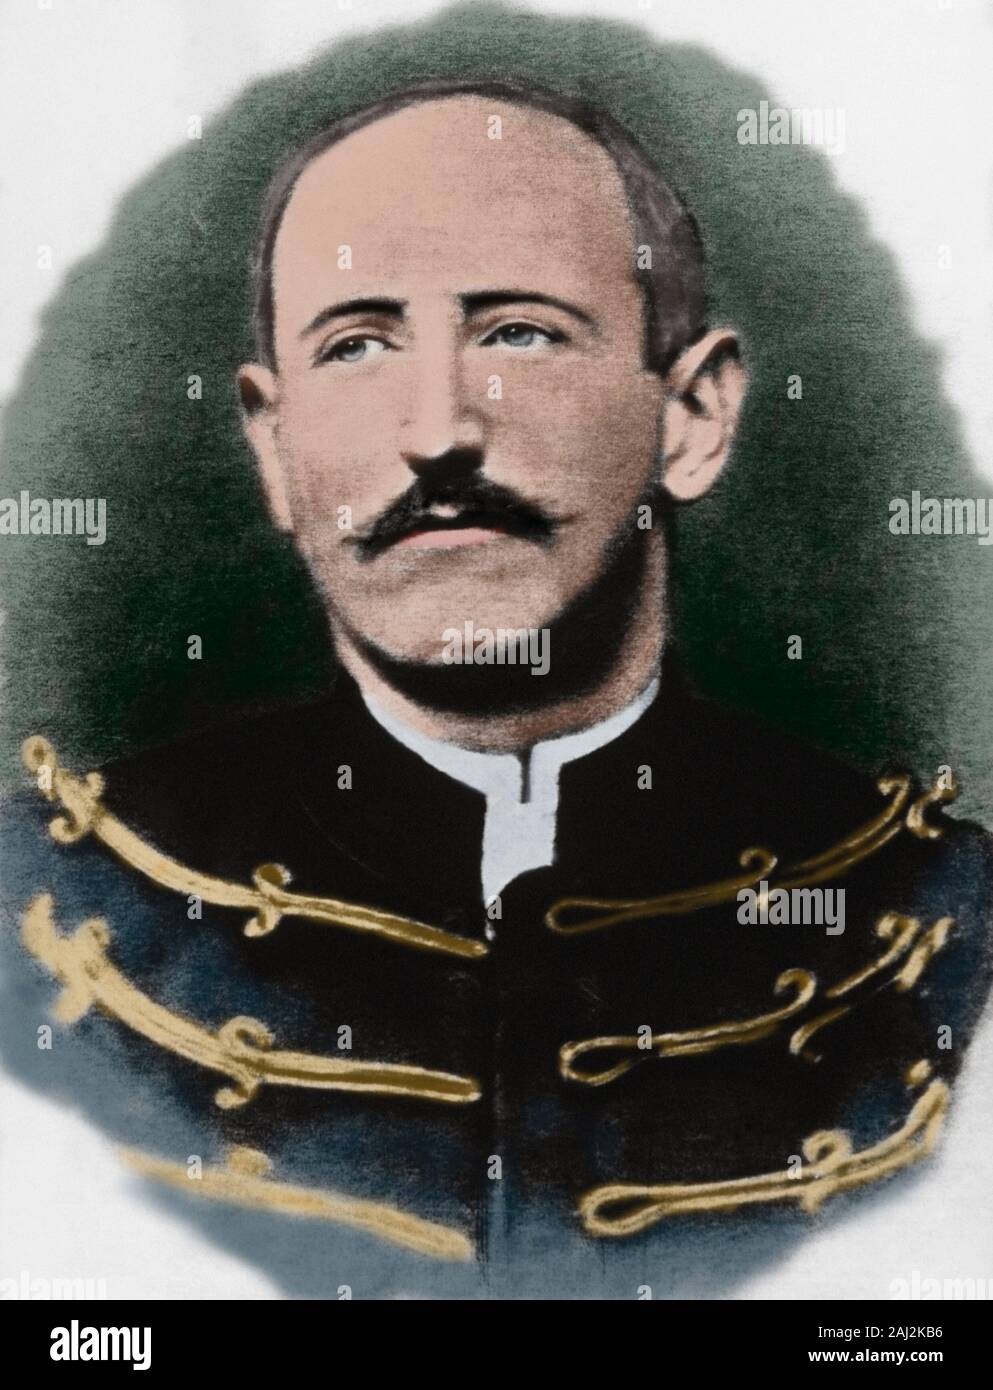 Alfred Dreyfus (1859-1935). Il francese ufficiale militare. Egli è stato assegnato al Ministero di guerra quando, nel 1894, è stato accusato di aver venduto segreti militari al militare tedesco. Fotografie scattate poco dopo la sua degradazione. Colorazione successiva. Foto Stock